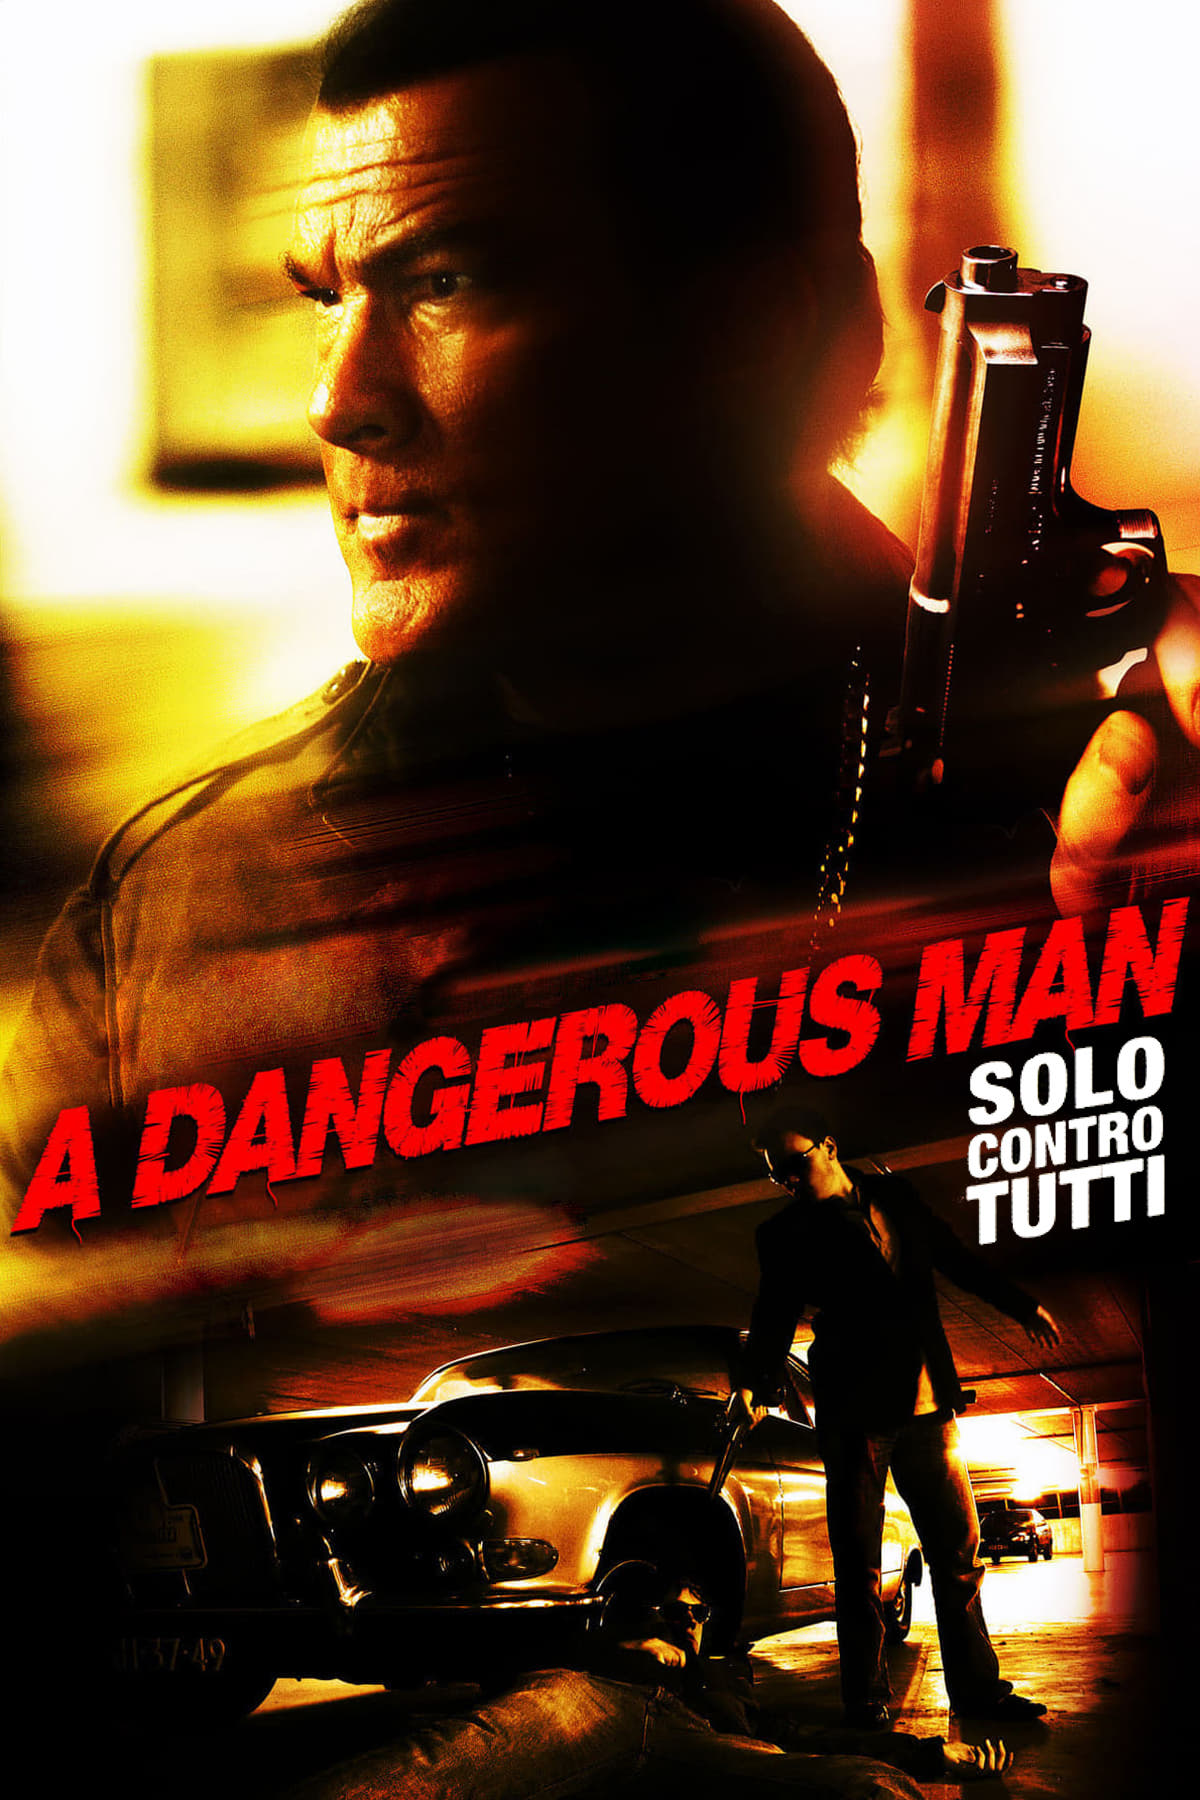 A Dangerous Man – Solo contro tutti (2009)